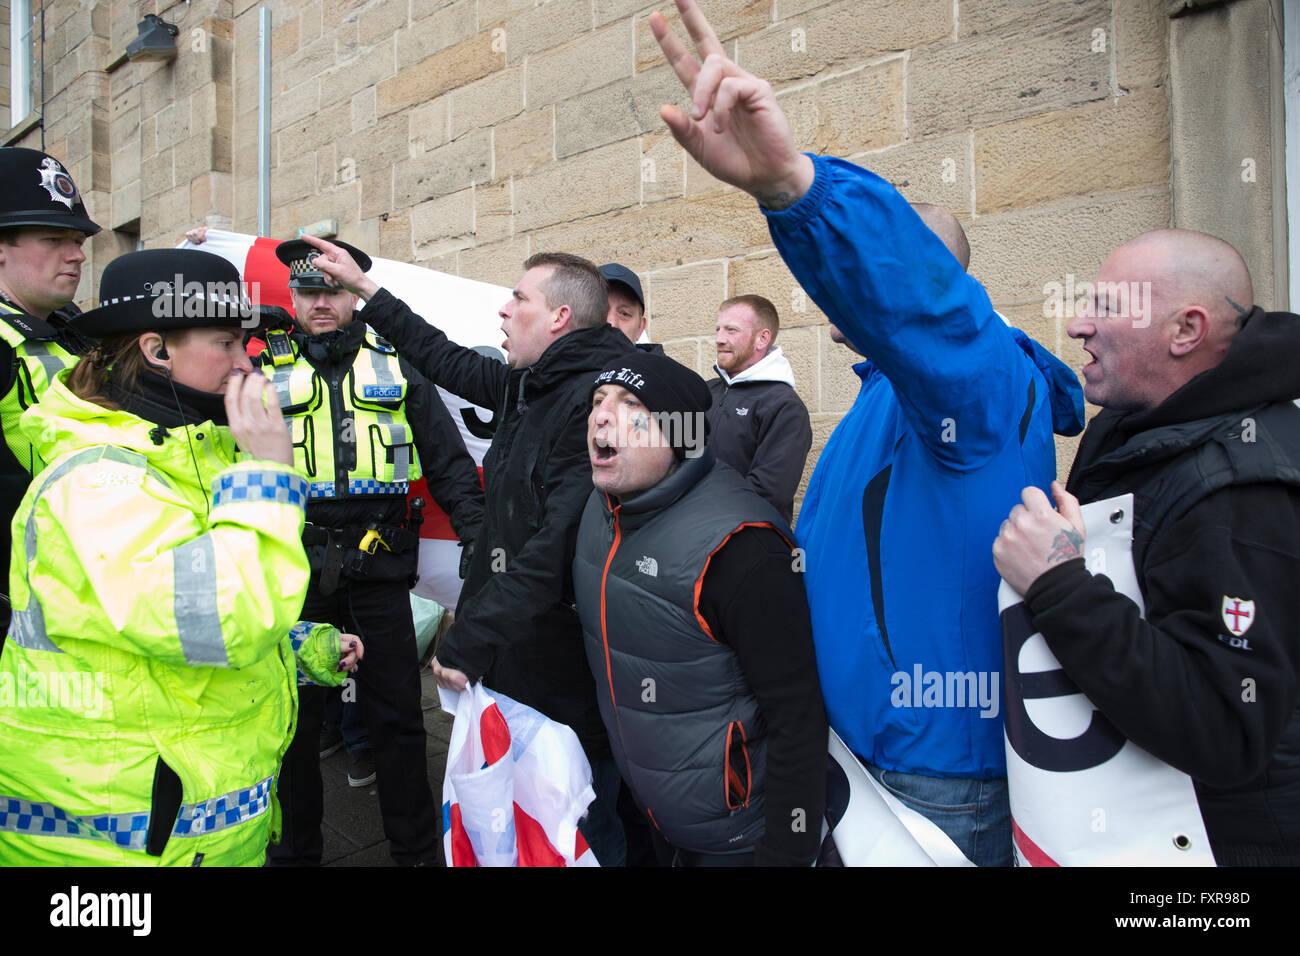 L'ala destra fascisti "Difesa inglese campionato' dimostrare al di fuori del Brexit 'voto lasciare' rally detenute da Boris Johnson MP campagne a lasciare l'euro il 23 giugno referendum, Newcastle-upon-Tyne, England Regno Unito Foto Stock